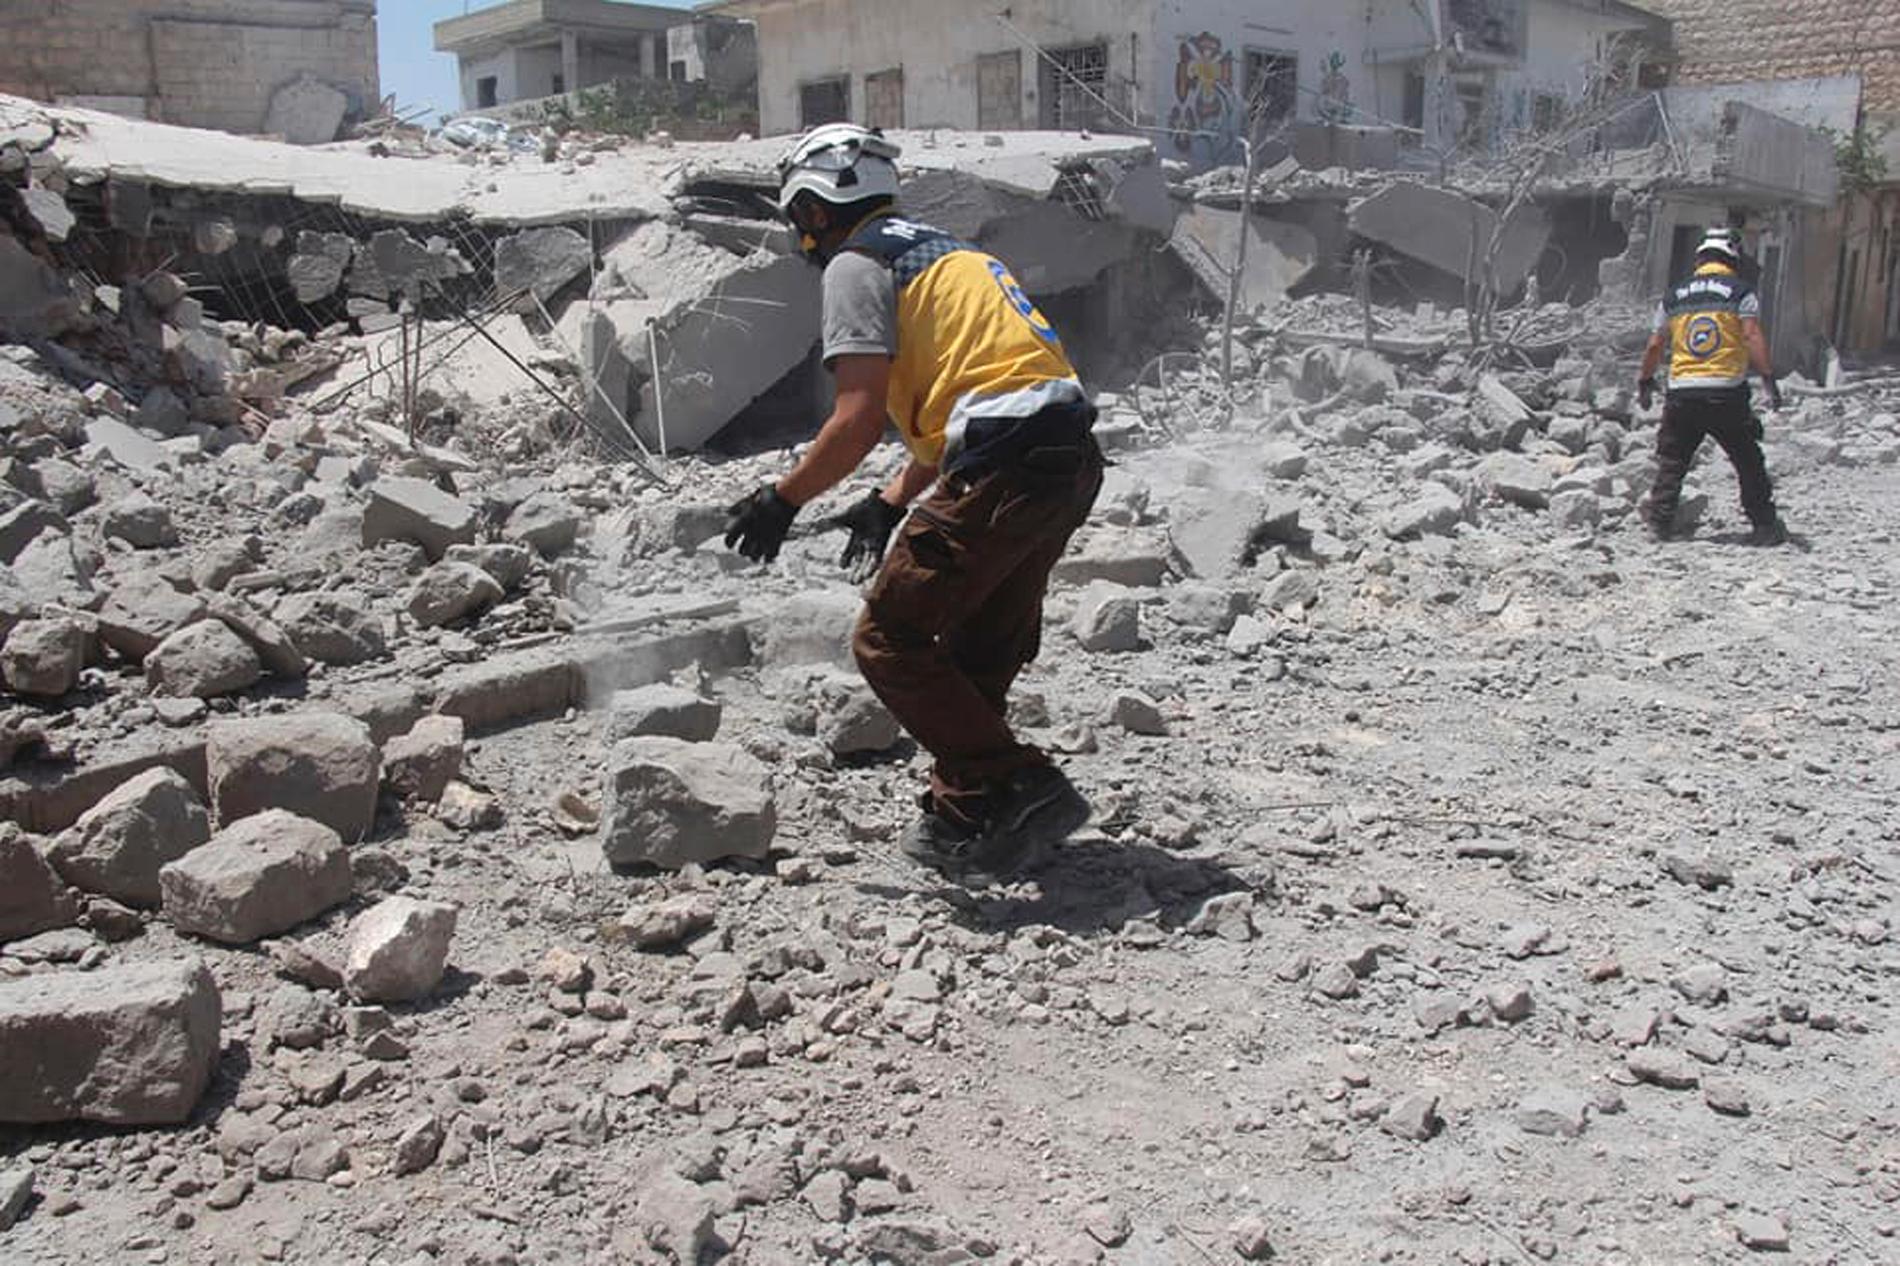 En bild tagen av civilförsvaret Vita hjälmarna, och vars äkthet har verifierats av nyhetsbyrån AP, visar räddningsarbetare i rasmassor efter ett flyganfall i södra Idlibprovinsen den 1 juni.